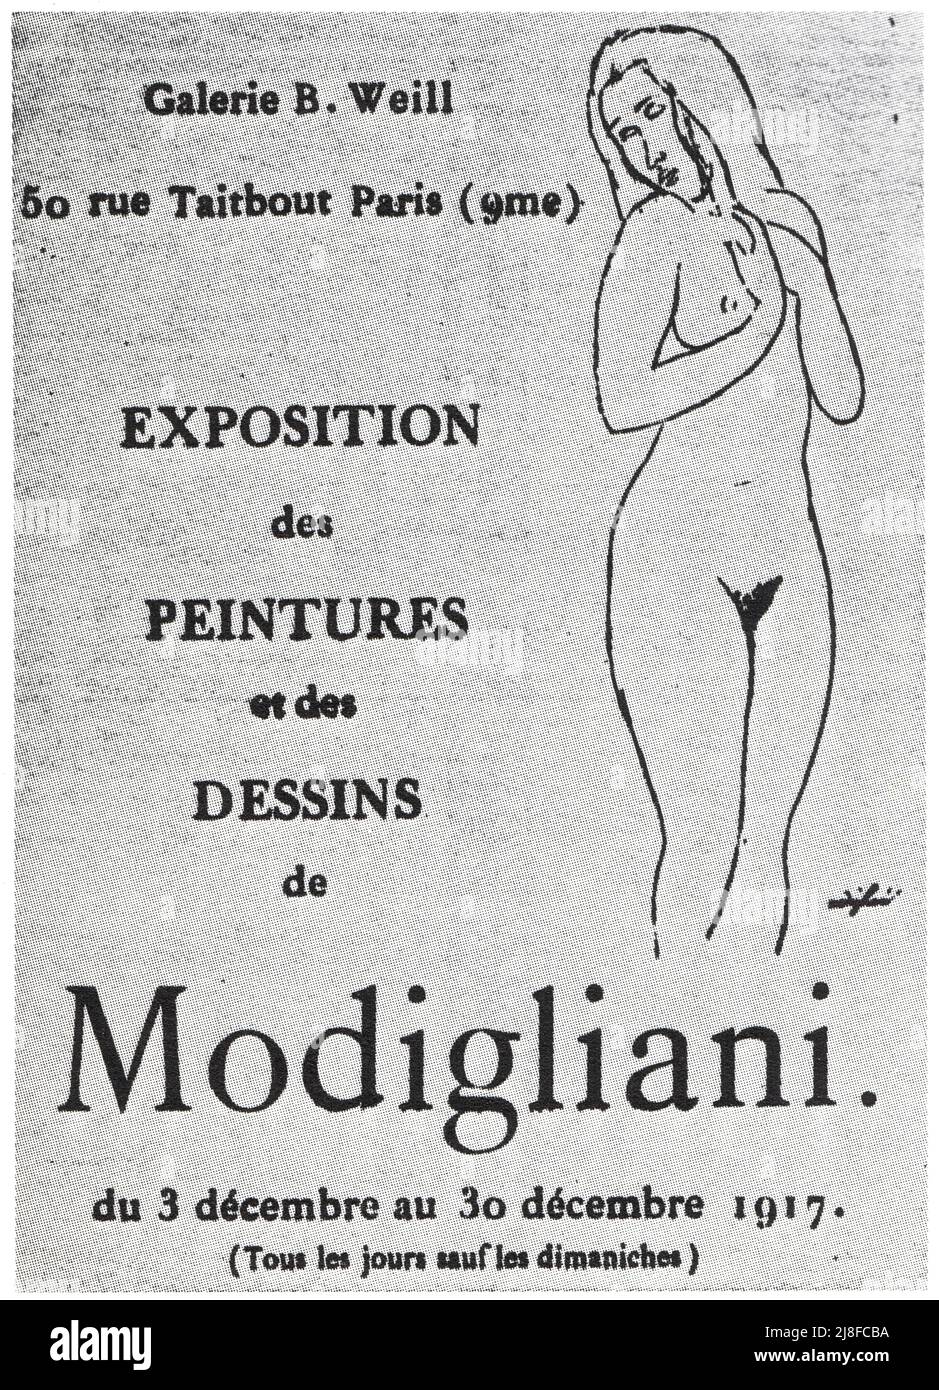 Catalague de la seule Exposition consacrée à Modigliani de son vivant, en 1917. Stockfoto